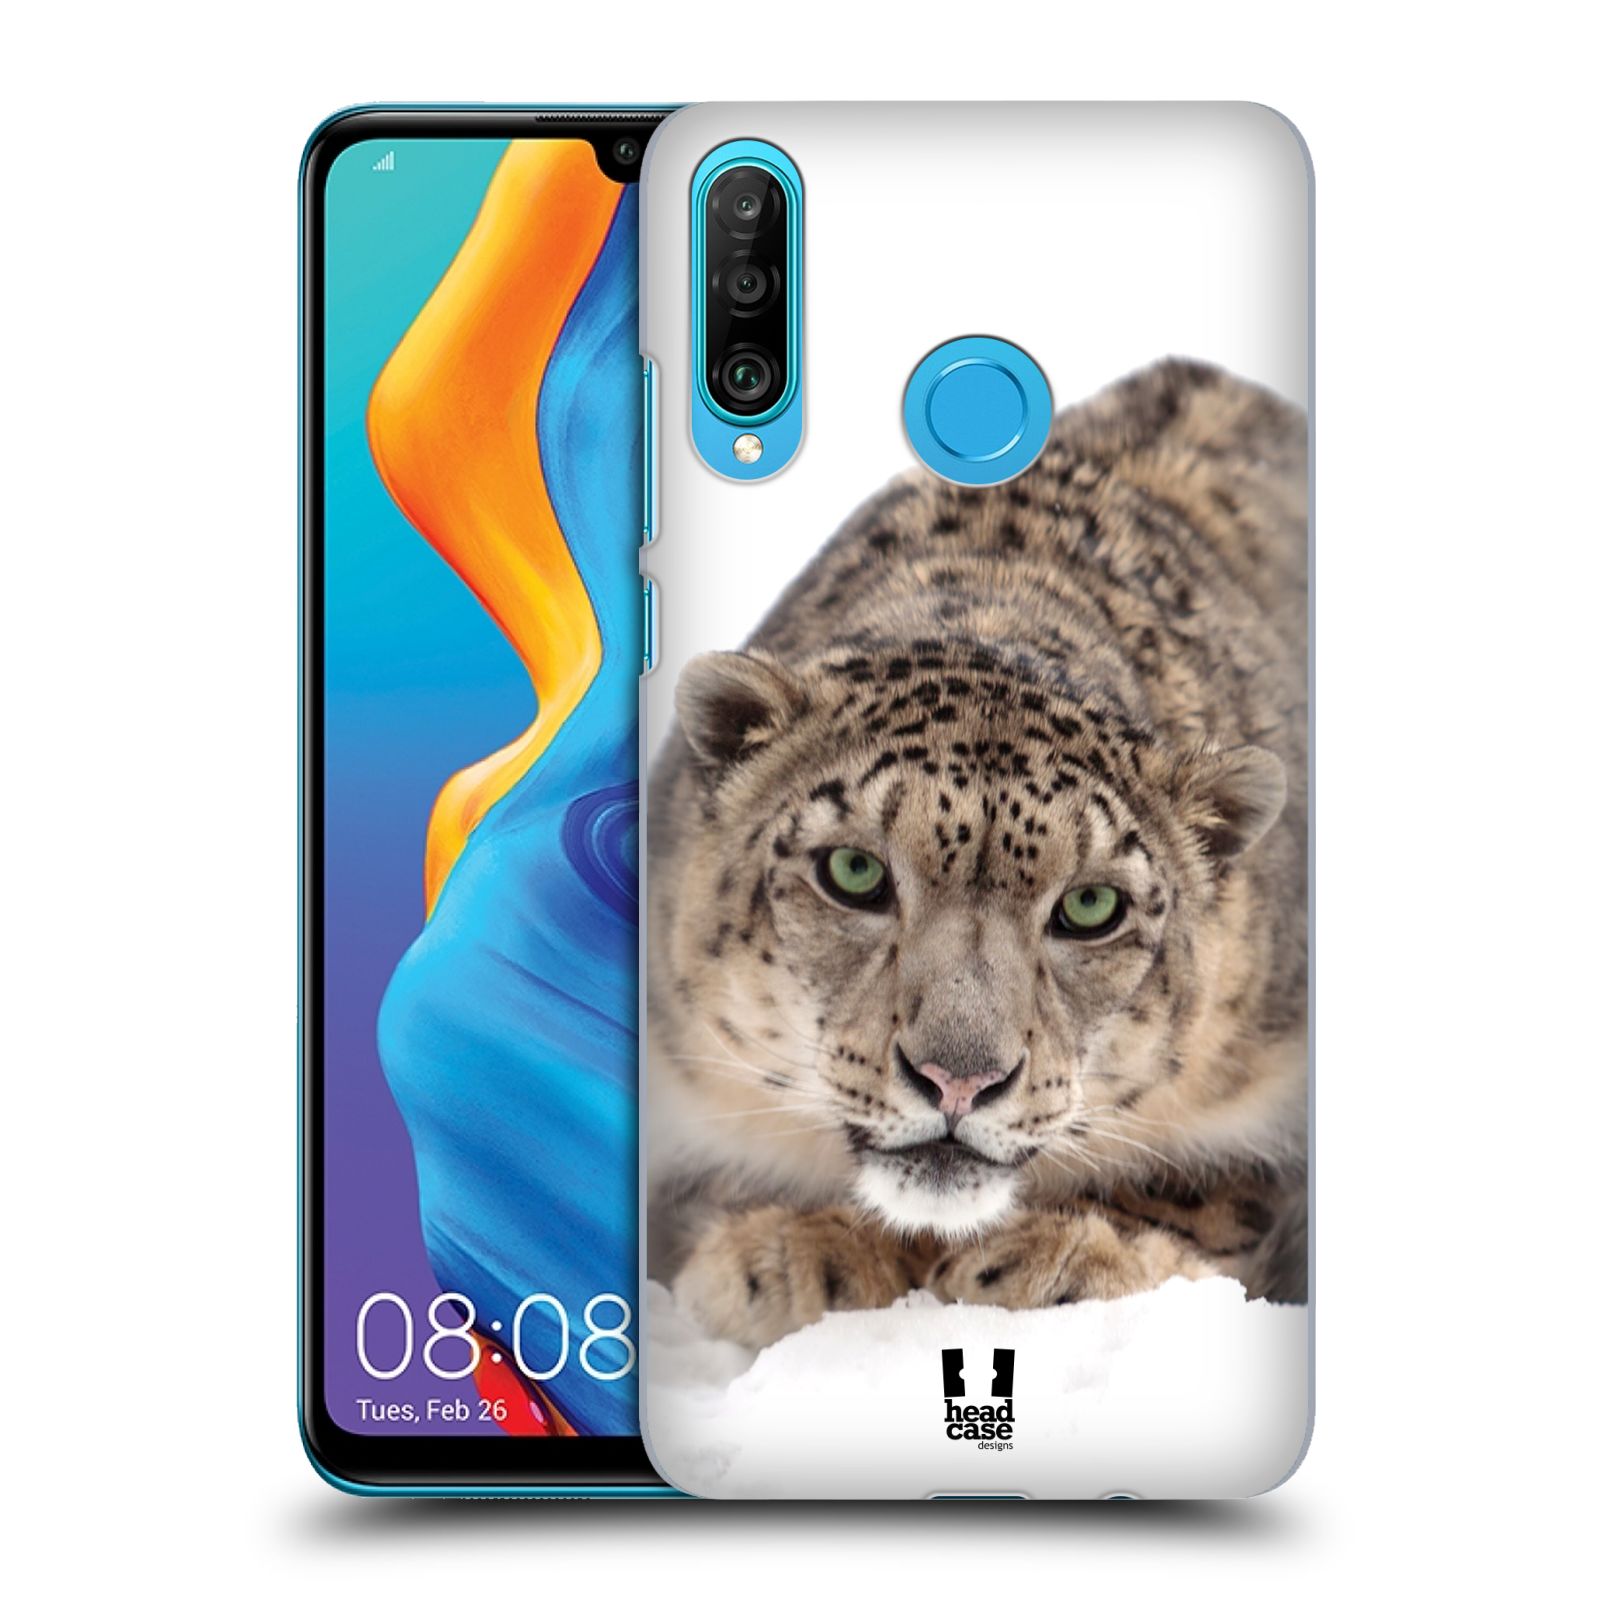 Pouzdro na mobil Huawei P30 LITE - HEAD CASE - vzor Divočina, Divoký život a zvířata foto SNĚŽNÝ LEOPARD